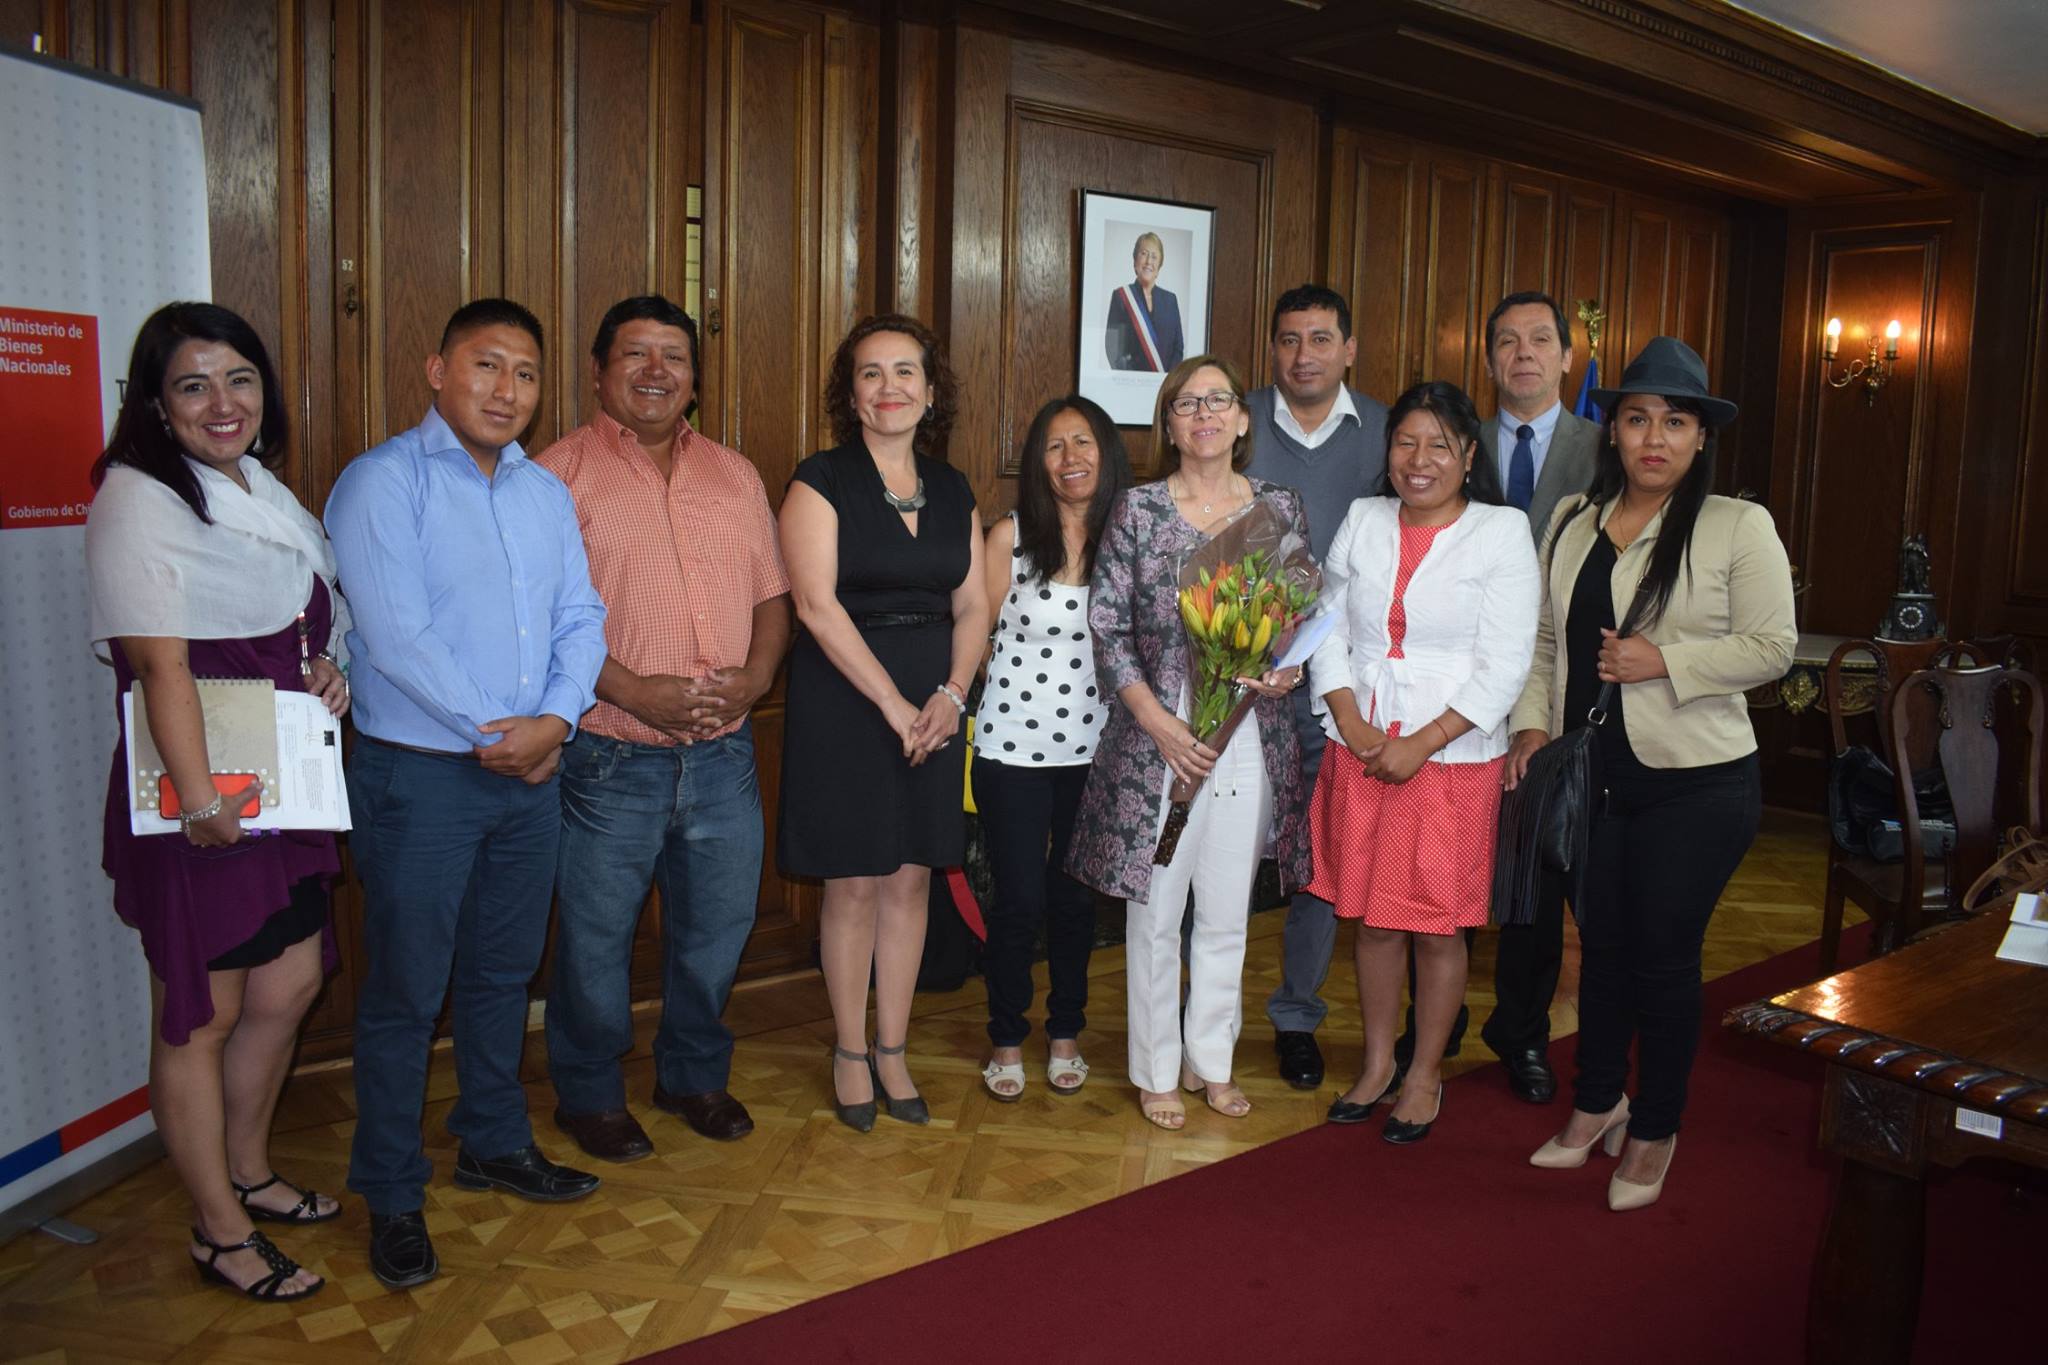 Alcaldesa junto a concejales viajan a Santiago a reunión en el marco de la cesión de territorios  pertenecientes a Socoroma